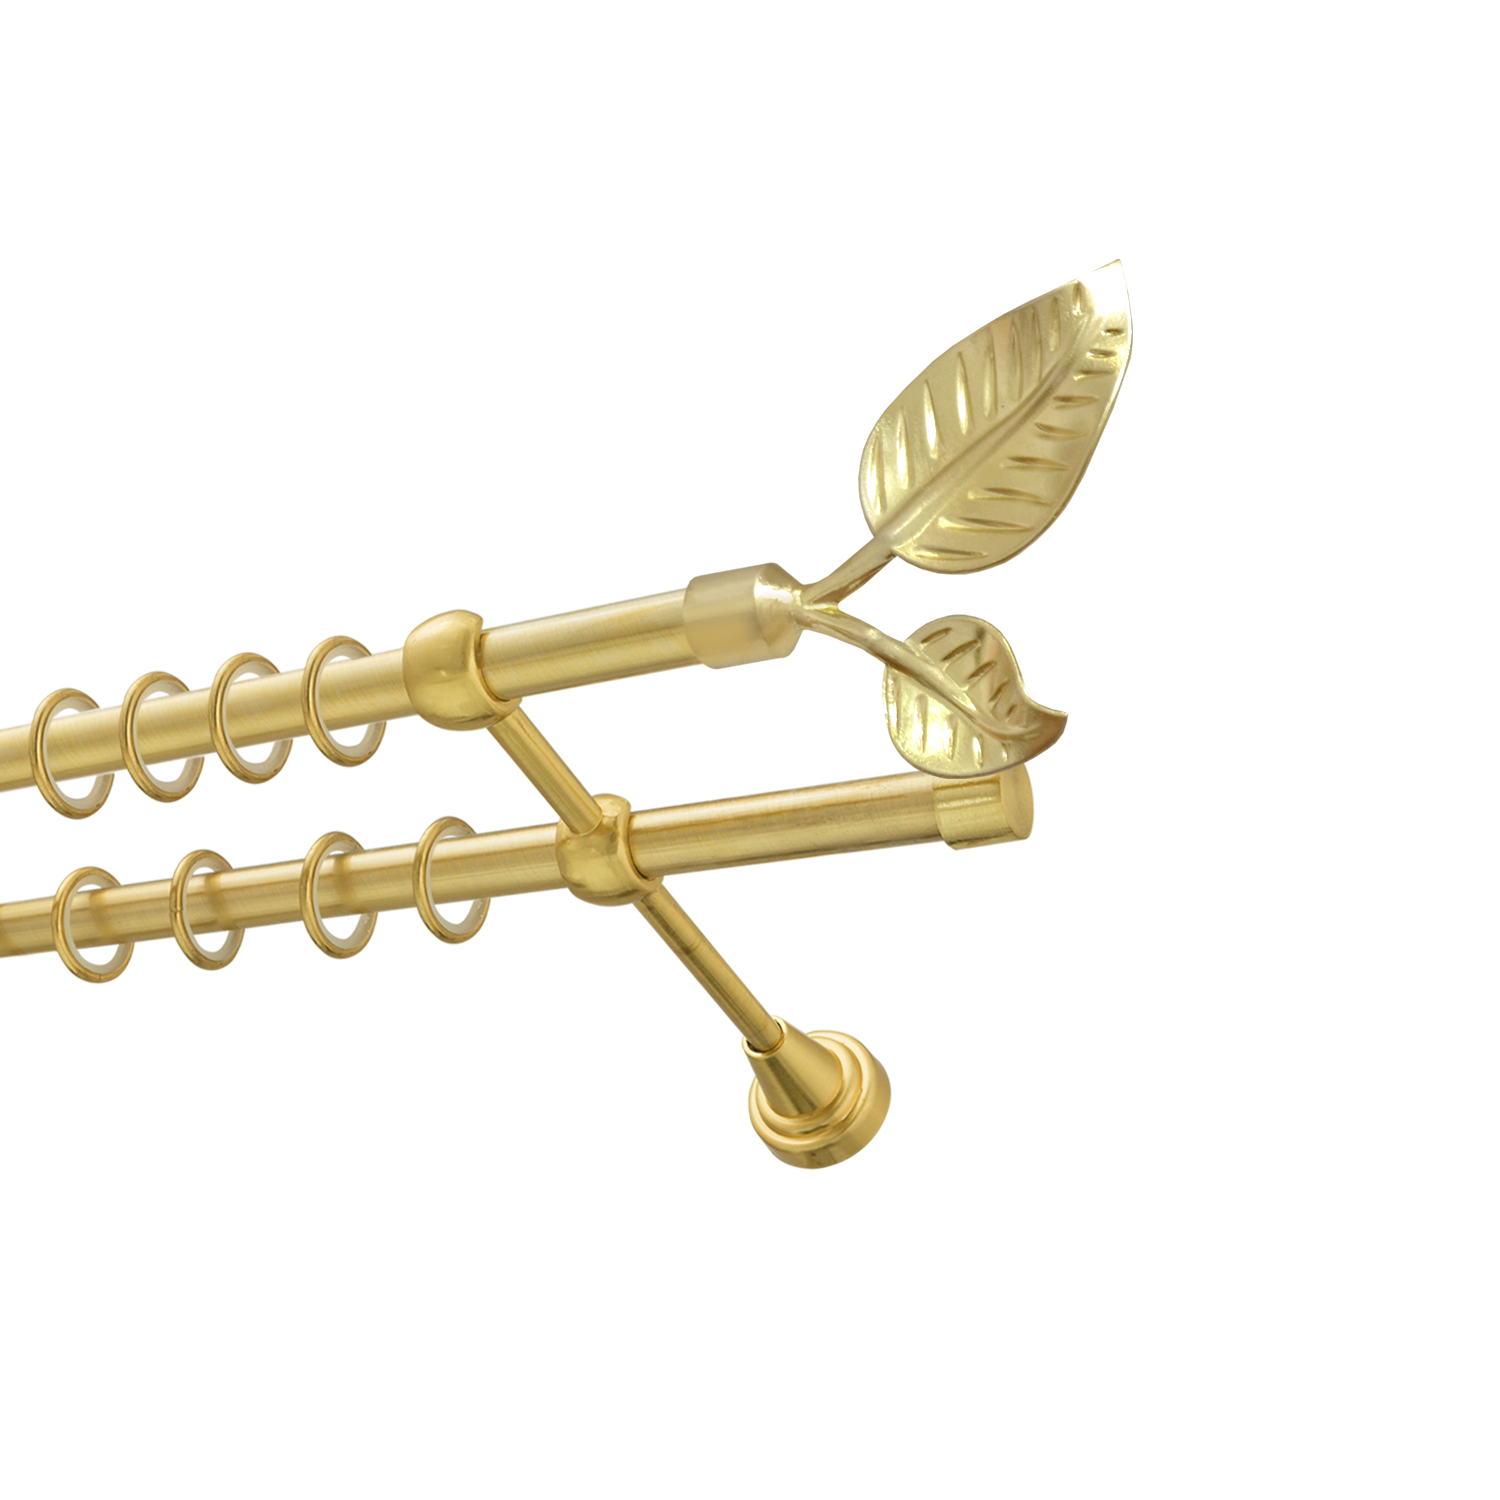 Металлический карниз для штор Тропик, двухрядный 16/16 мм, золото, гладкая штанга, длина 160 см - фото Wikidecor.ru